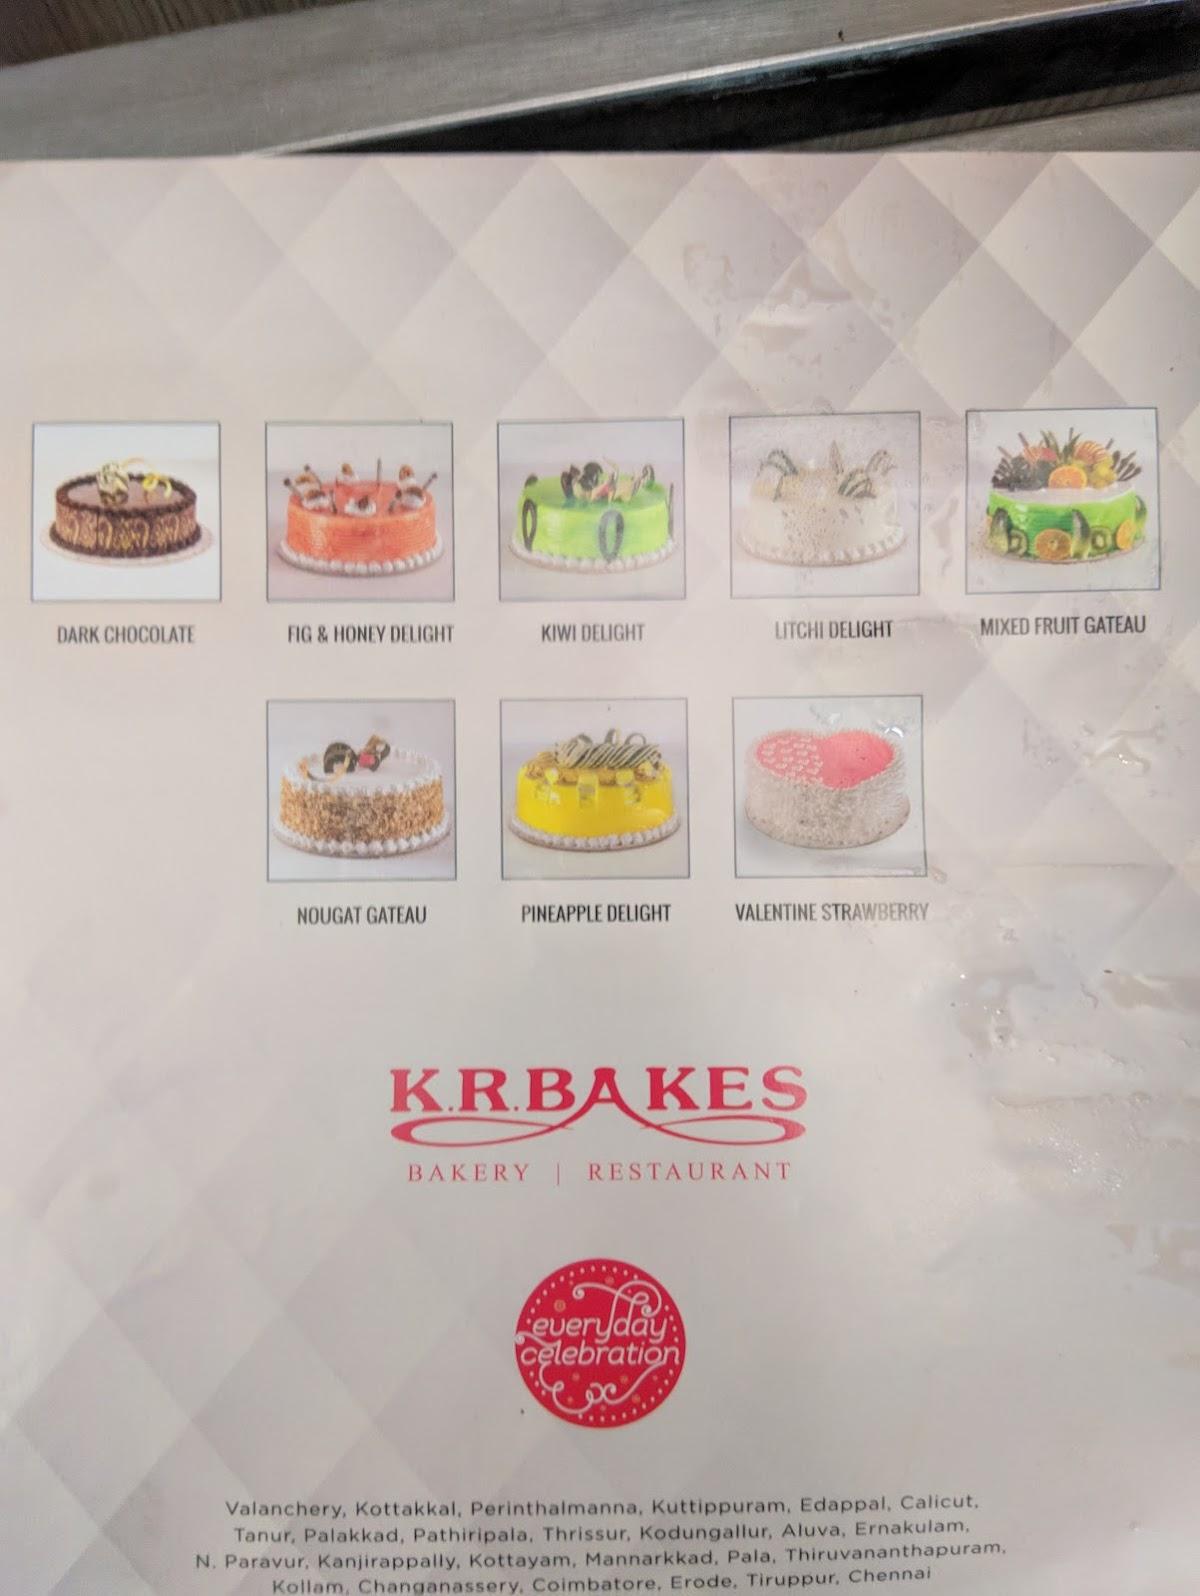 Online Birthday Cake in Tirupur | KRbakes.com